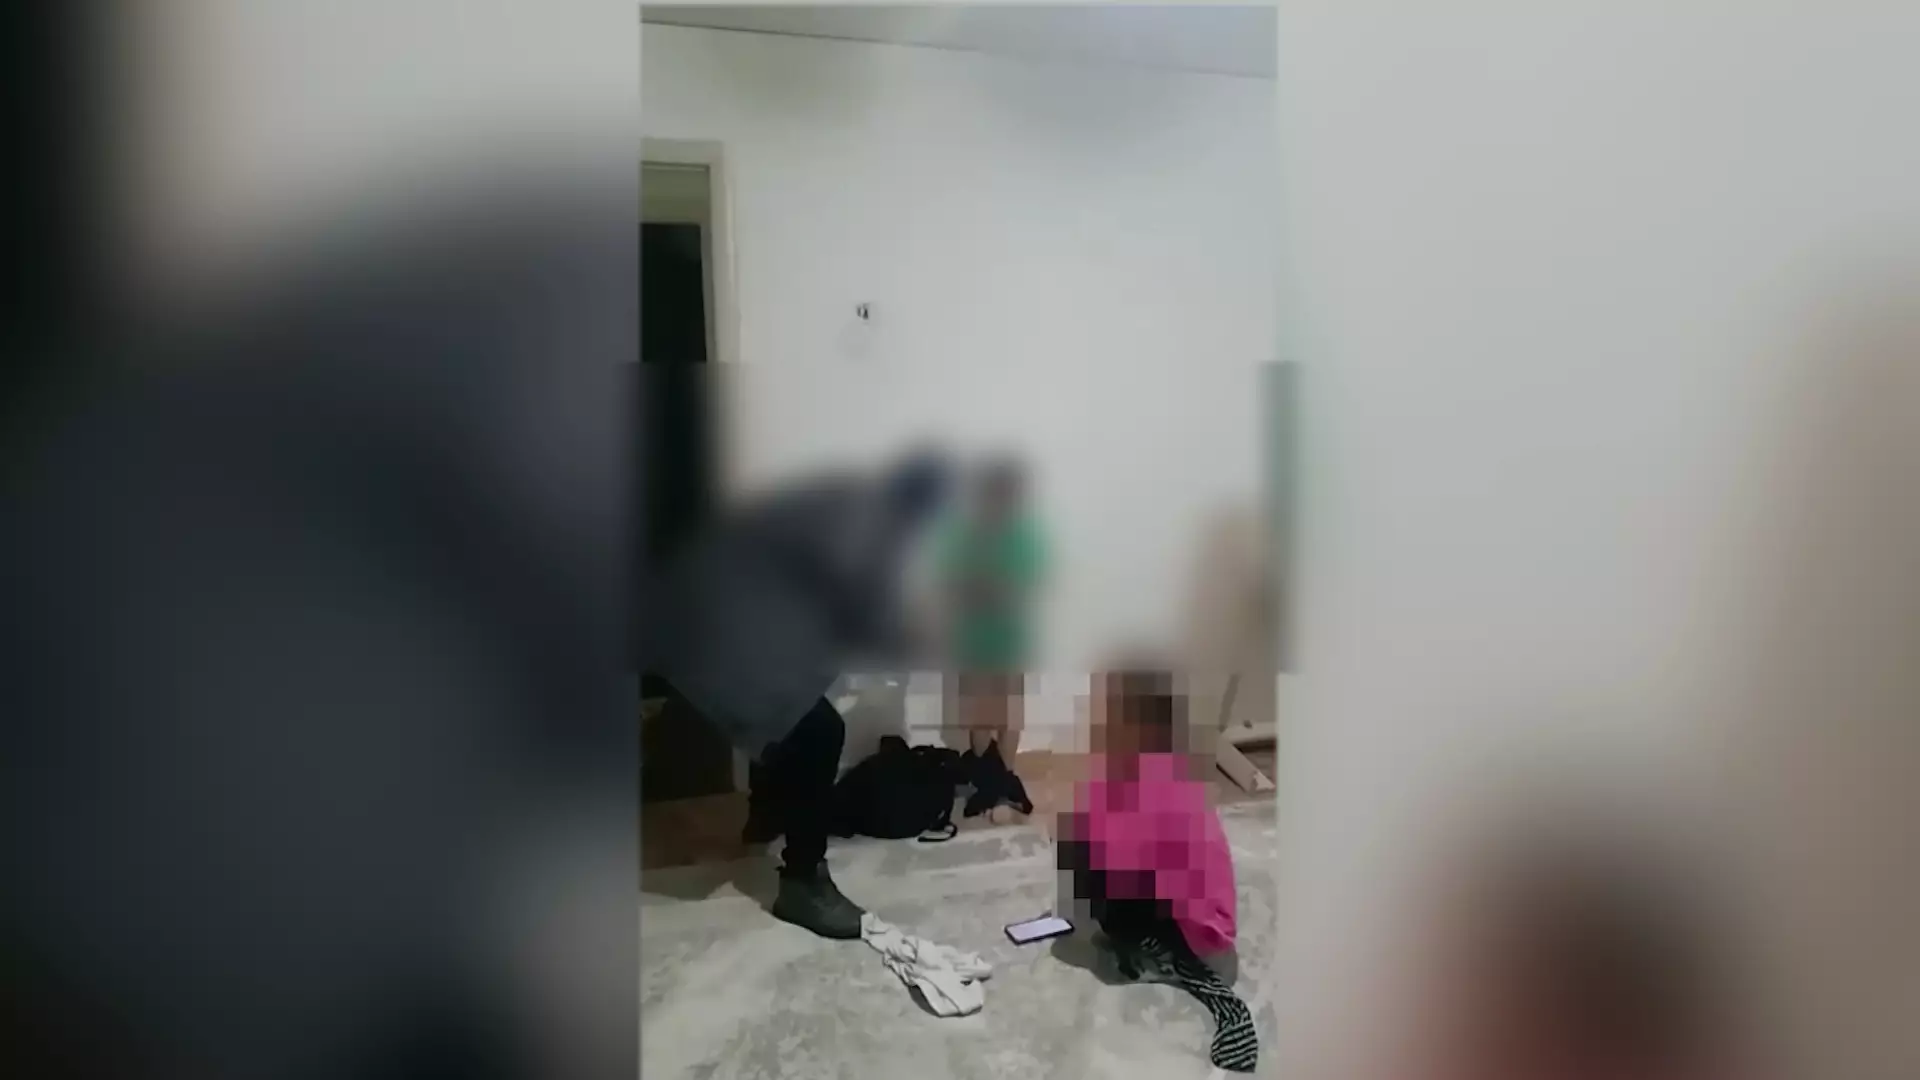 Связал, избил, угрожал расправой: подозреваемого в нападении на детей задержали в Алматинской области